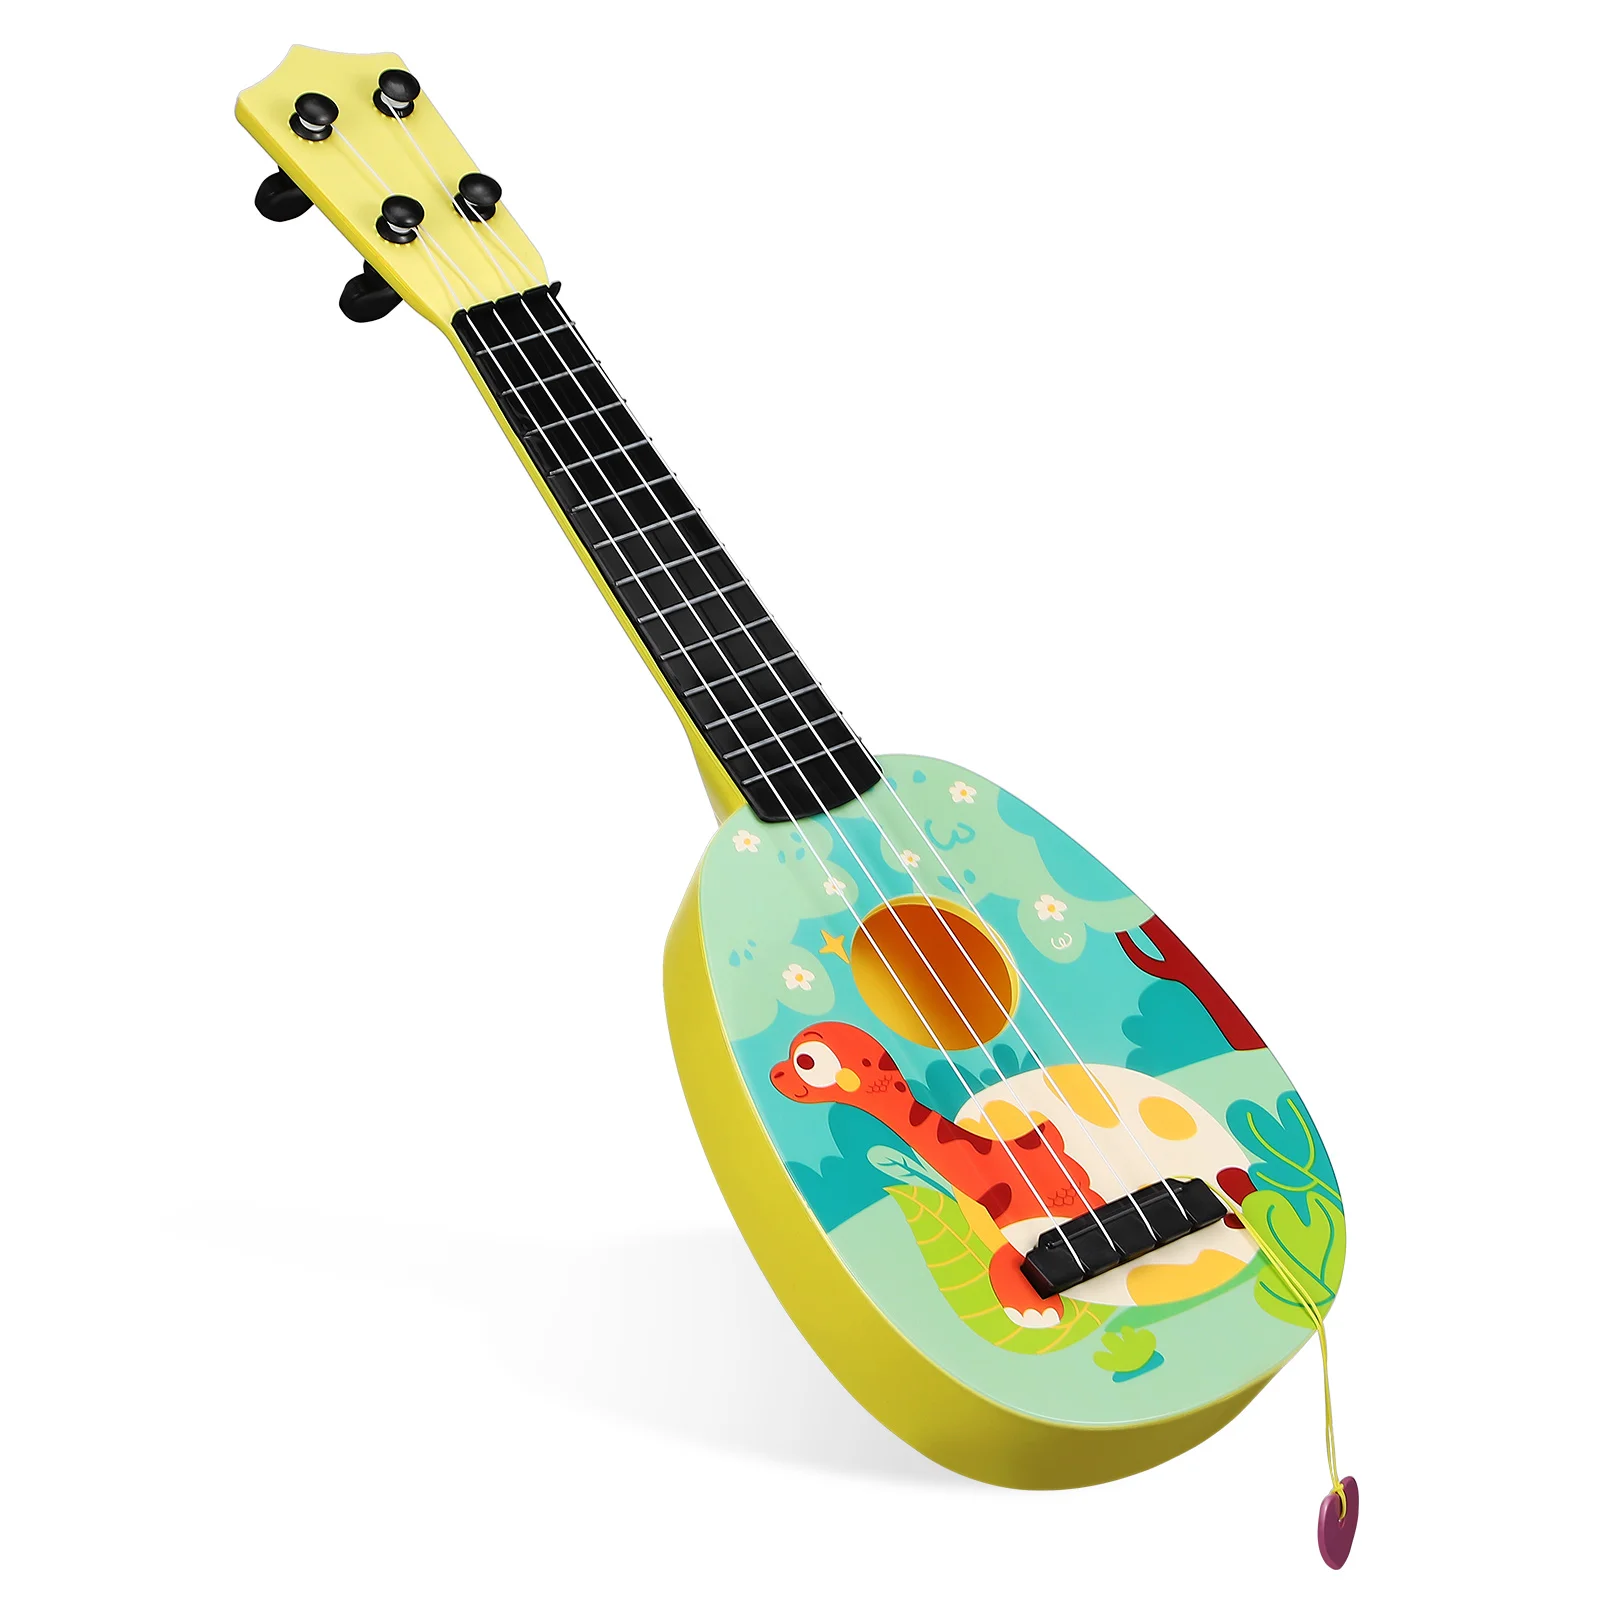 

Kids Ukeleles For Beginners Ukulele Childrens Guitar Small Plastic Mini Toddler